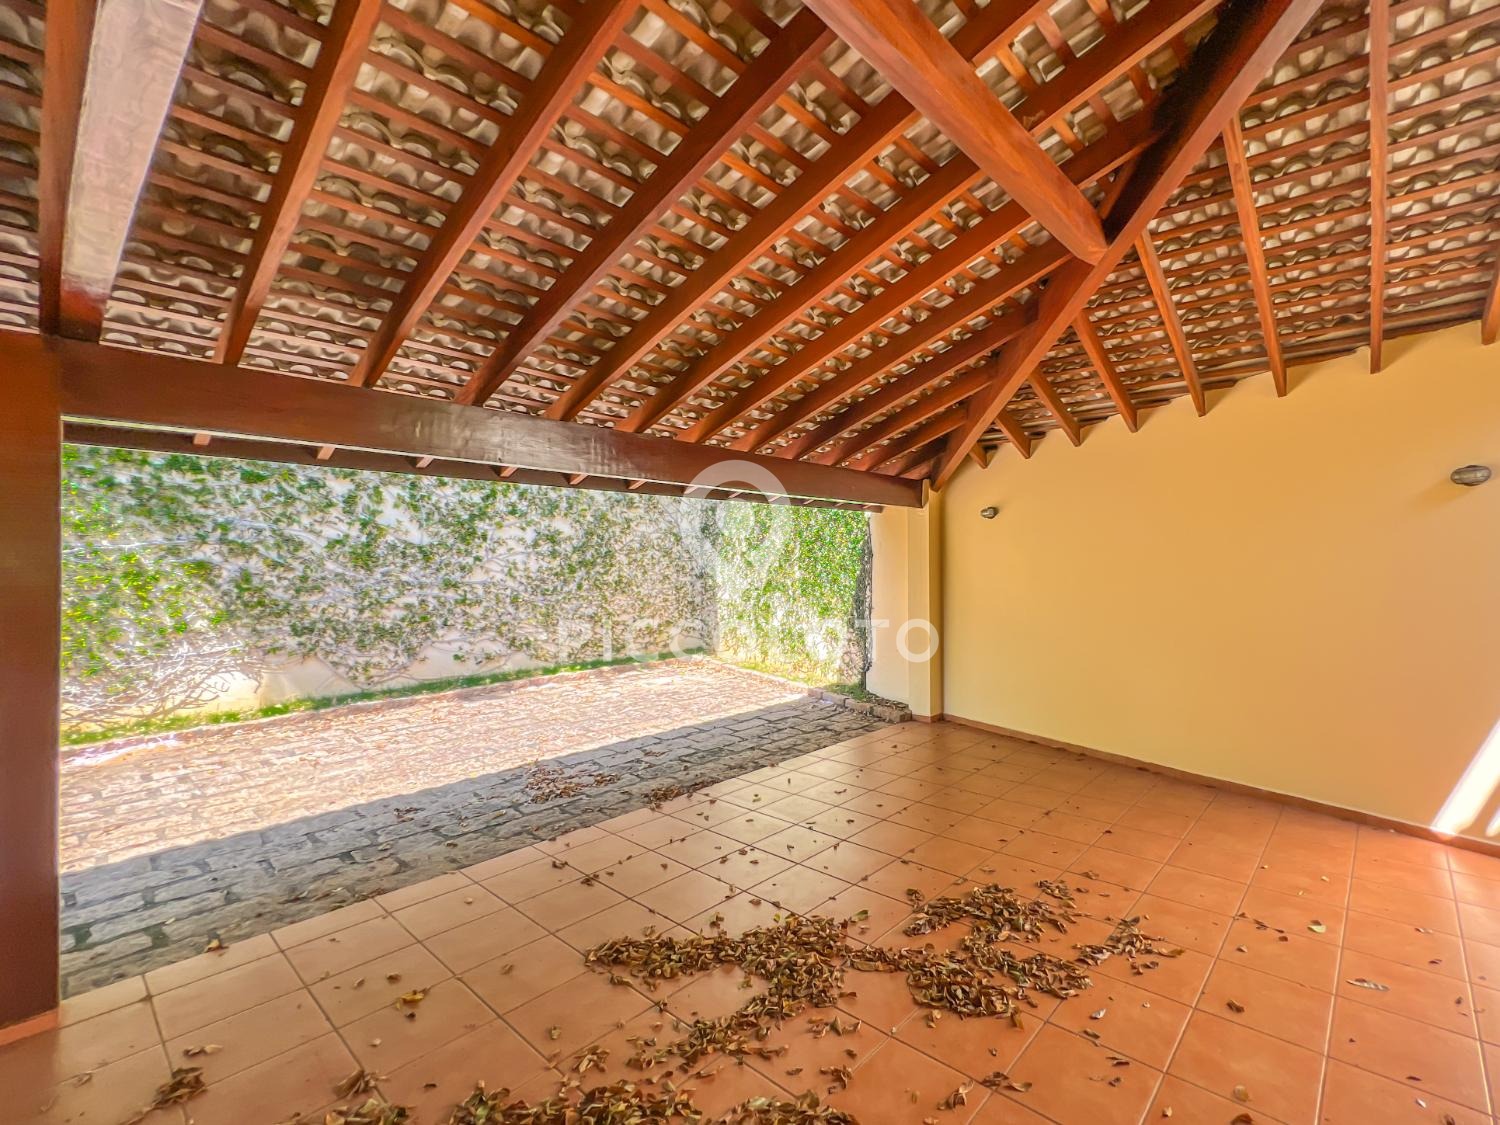 Piccoloto -Casa à venda no Jardim Botânico (Sousas) em Campinas